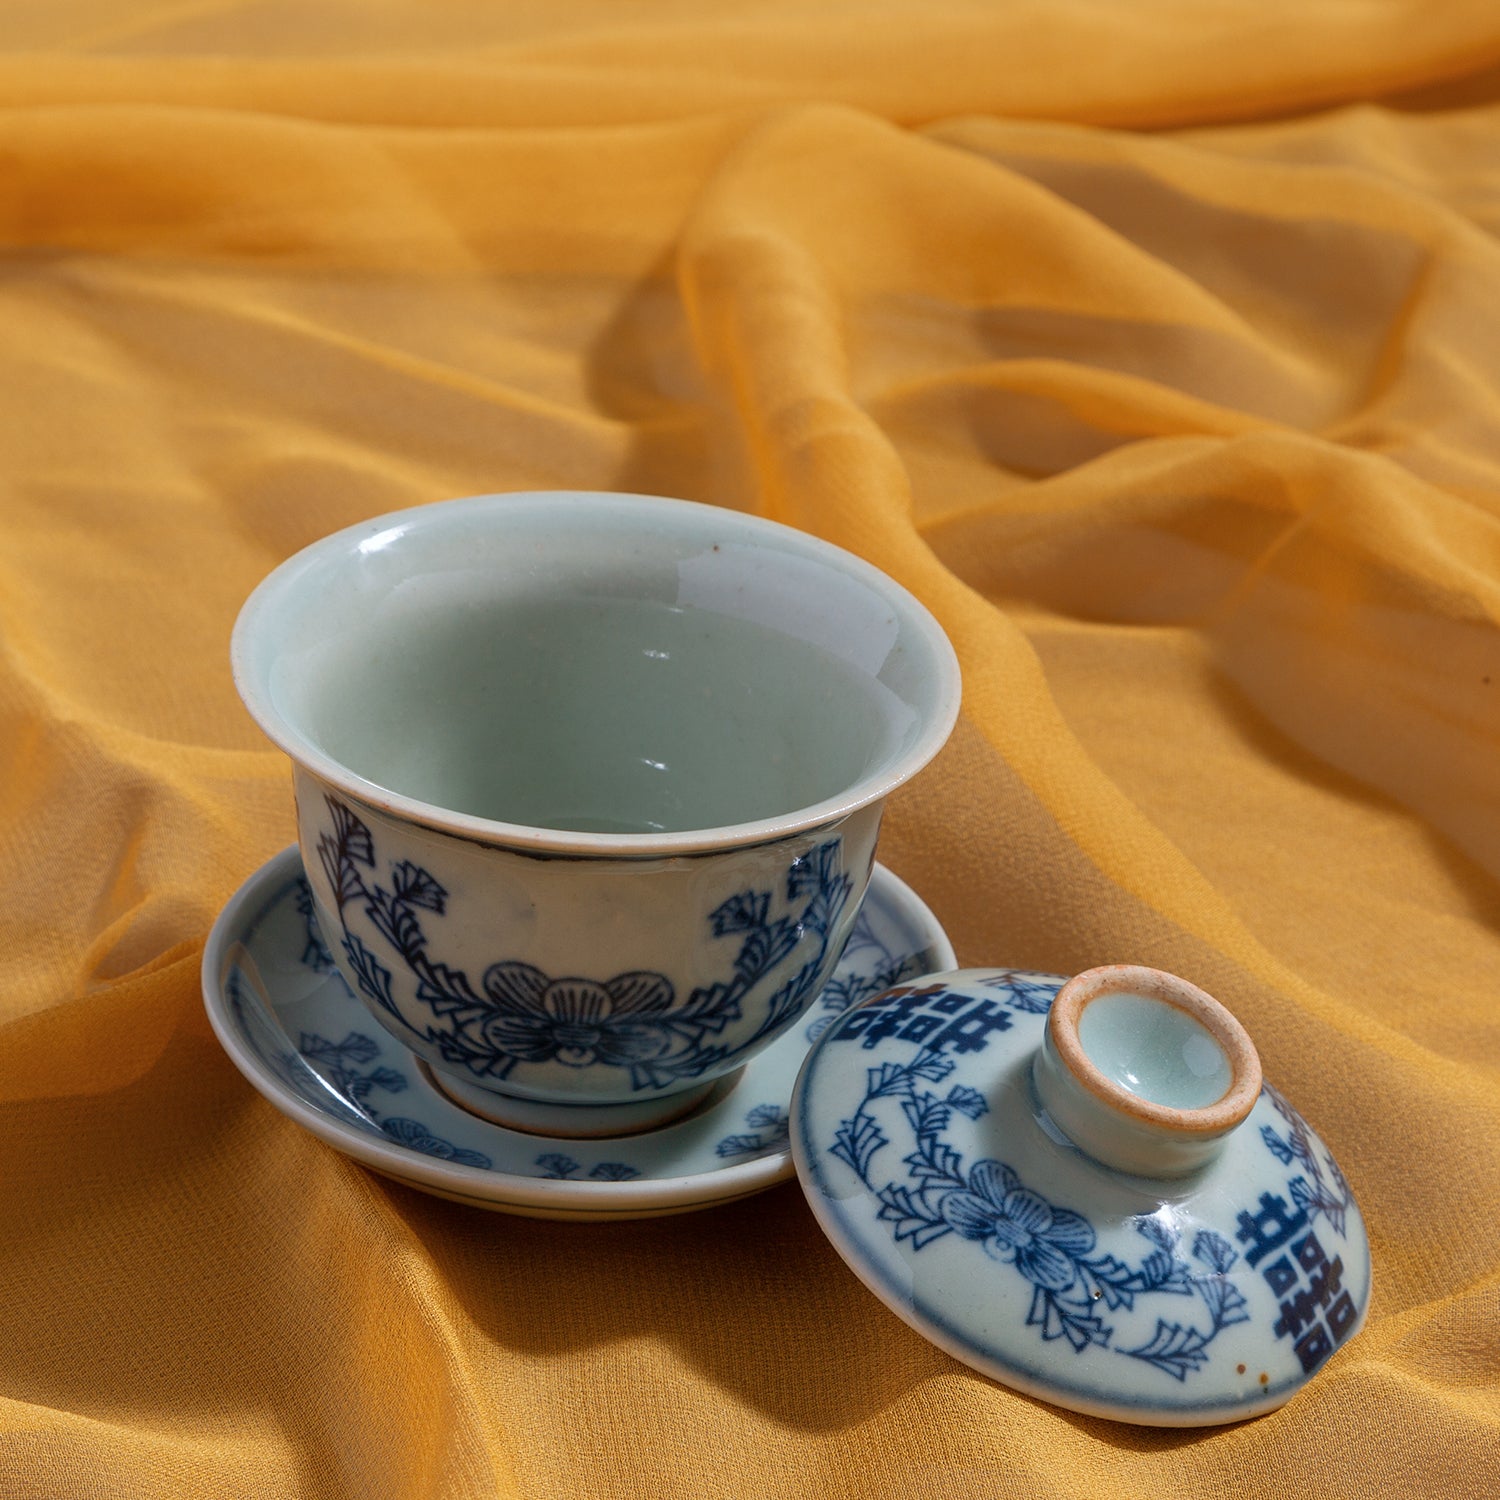 Blue and White Mini China Tea Set